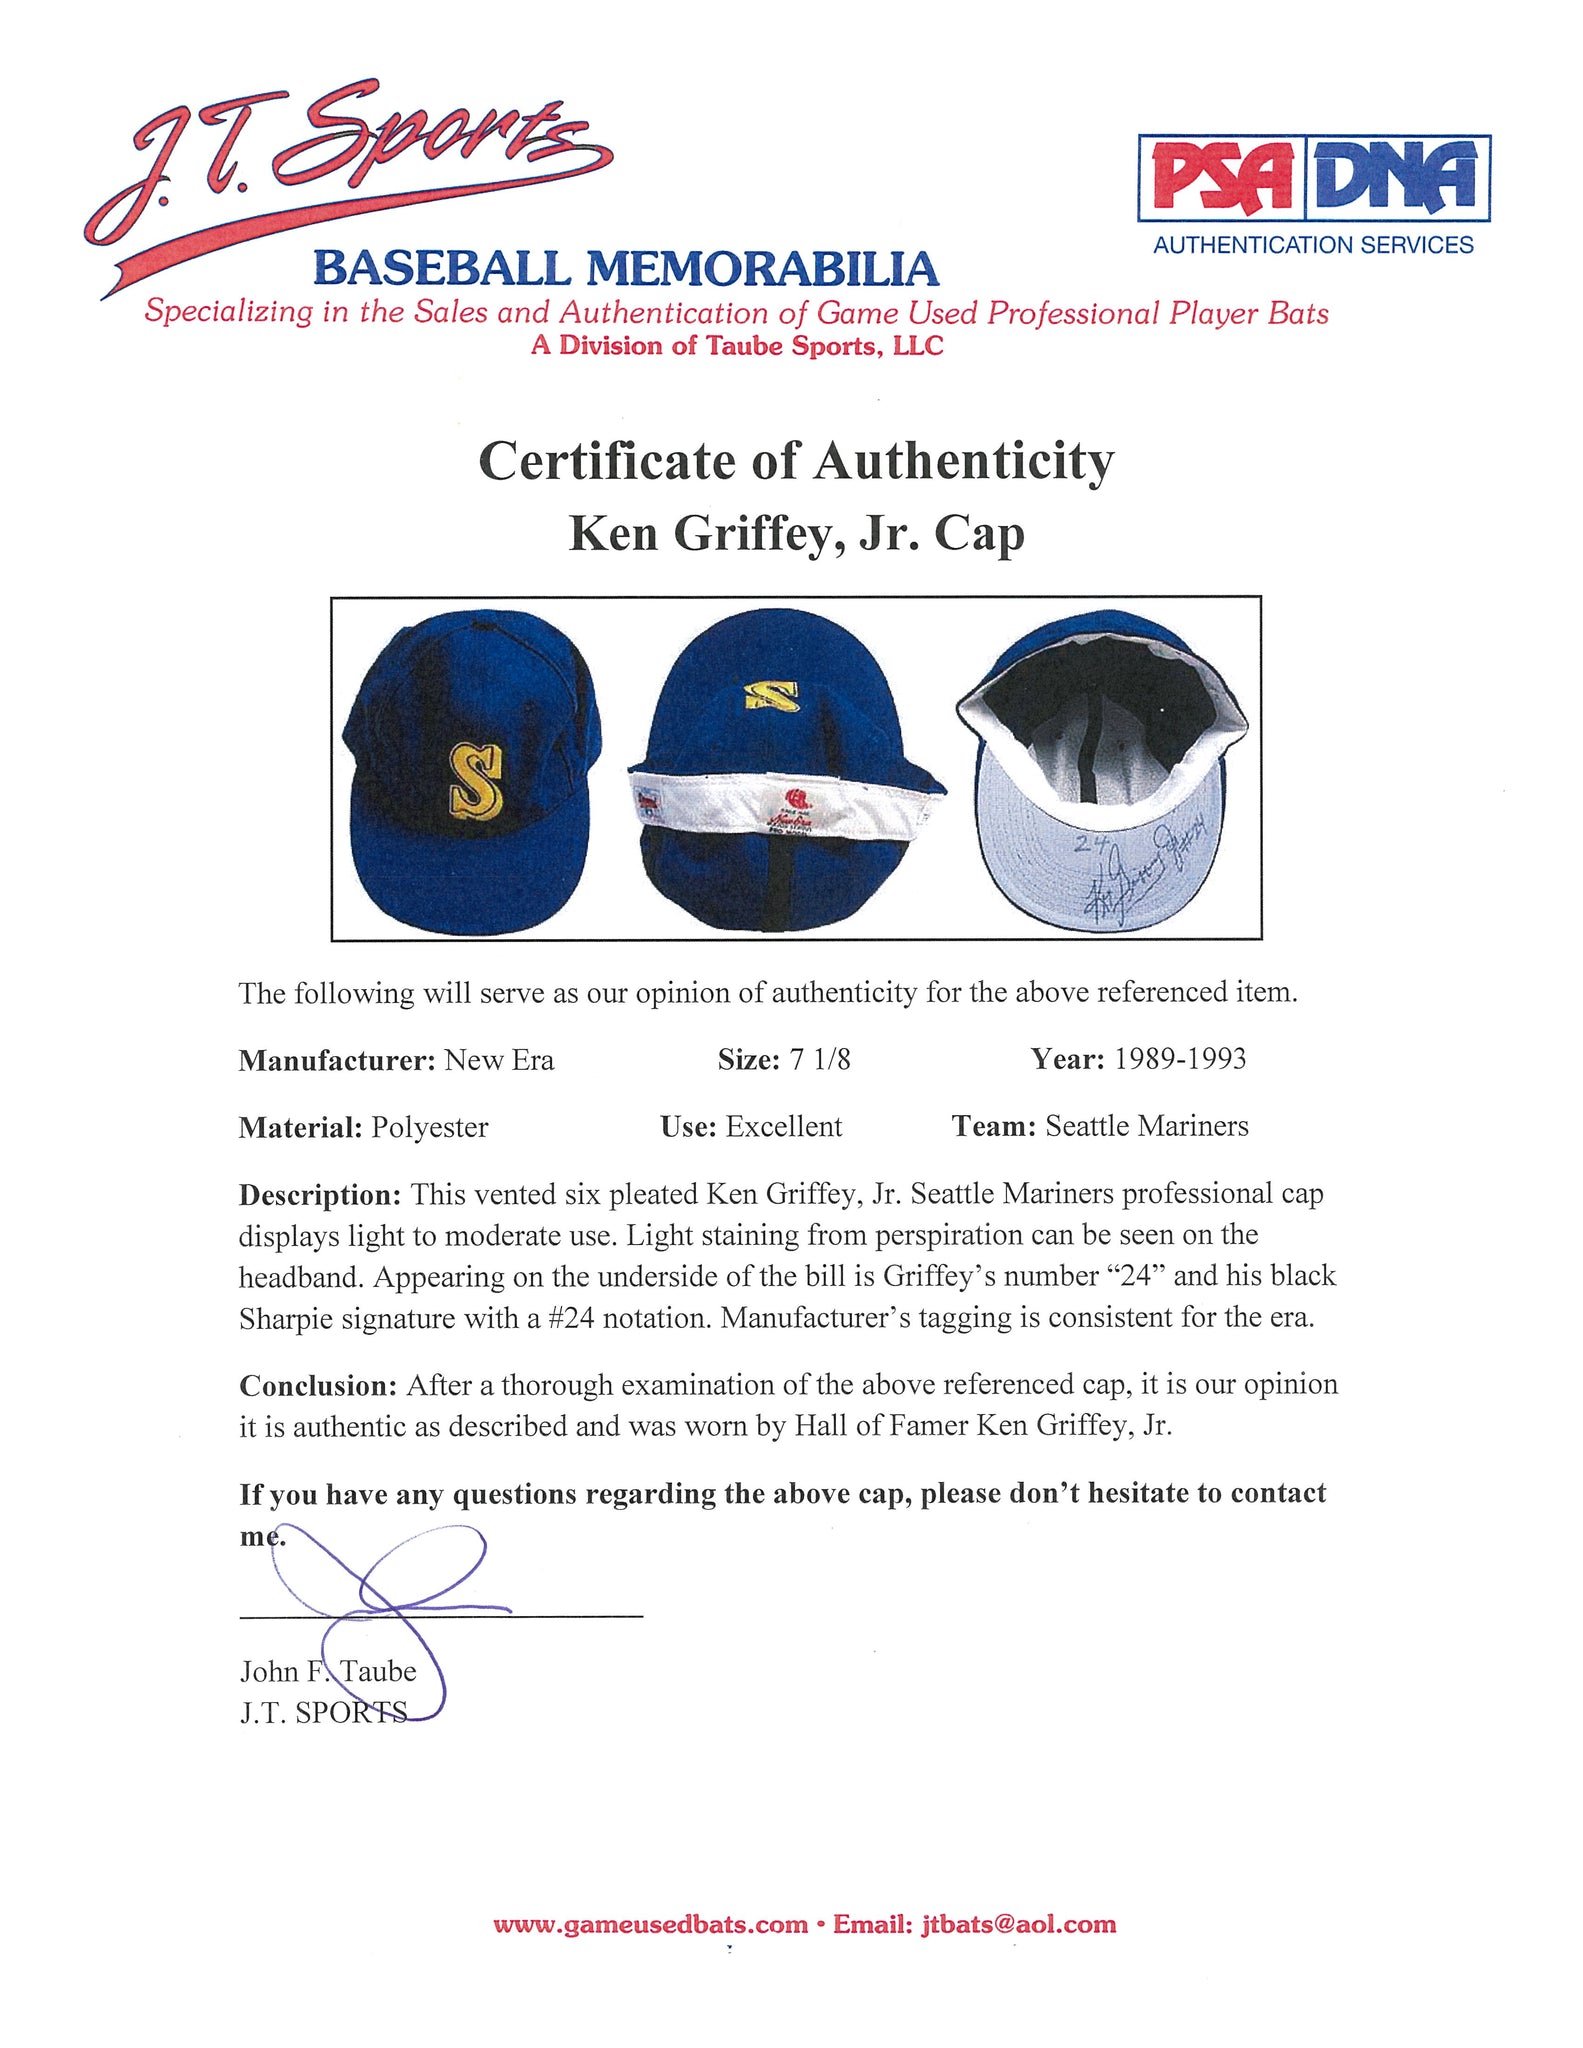 Ken Griffey, Jr. Signed Hat Reds – COA UDA